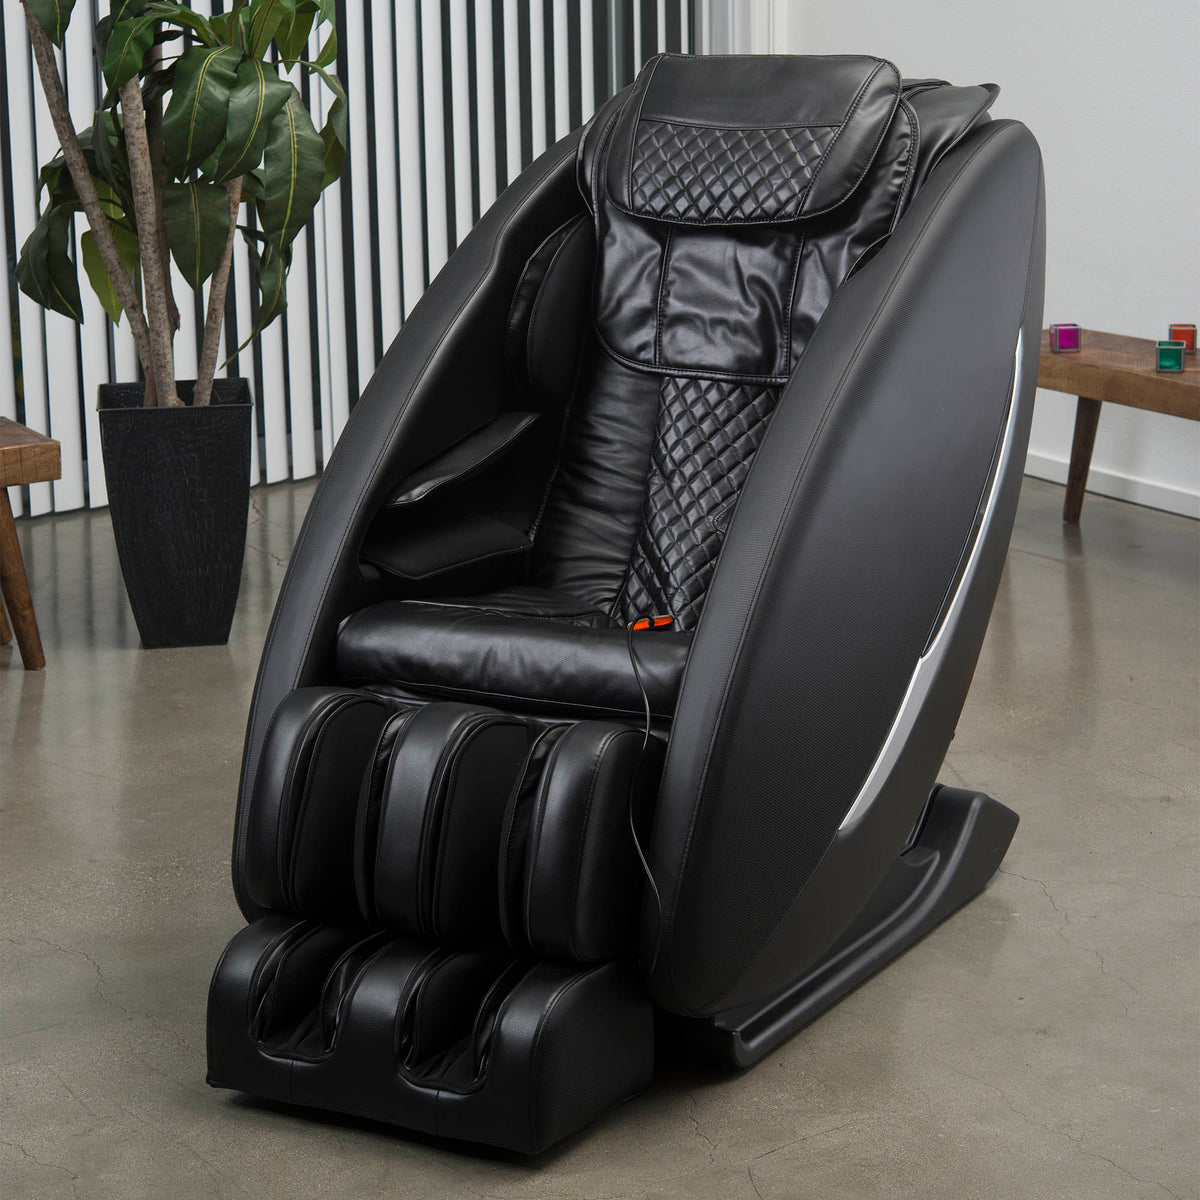 Inner Balance Wellness Ji Massage Chair